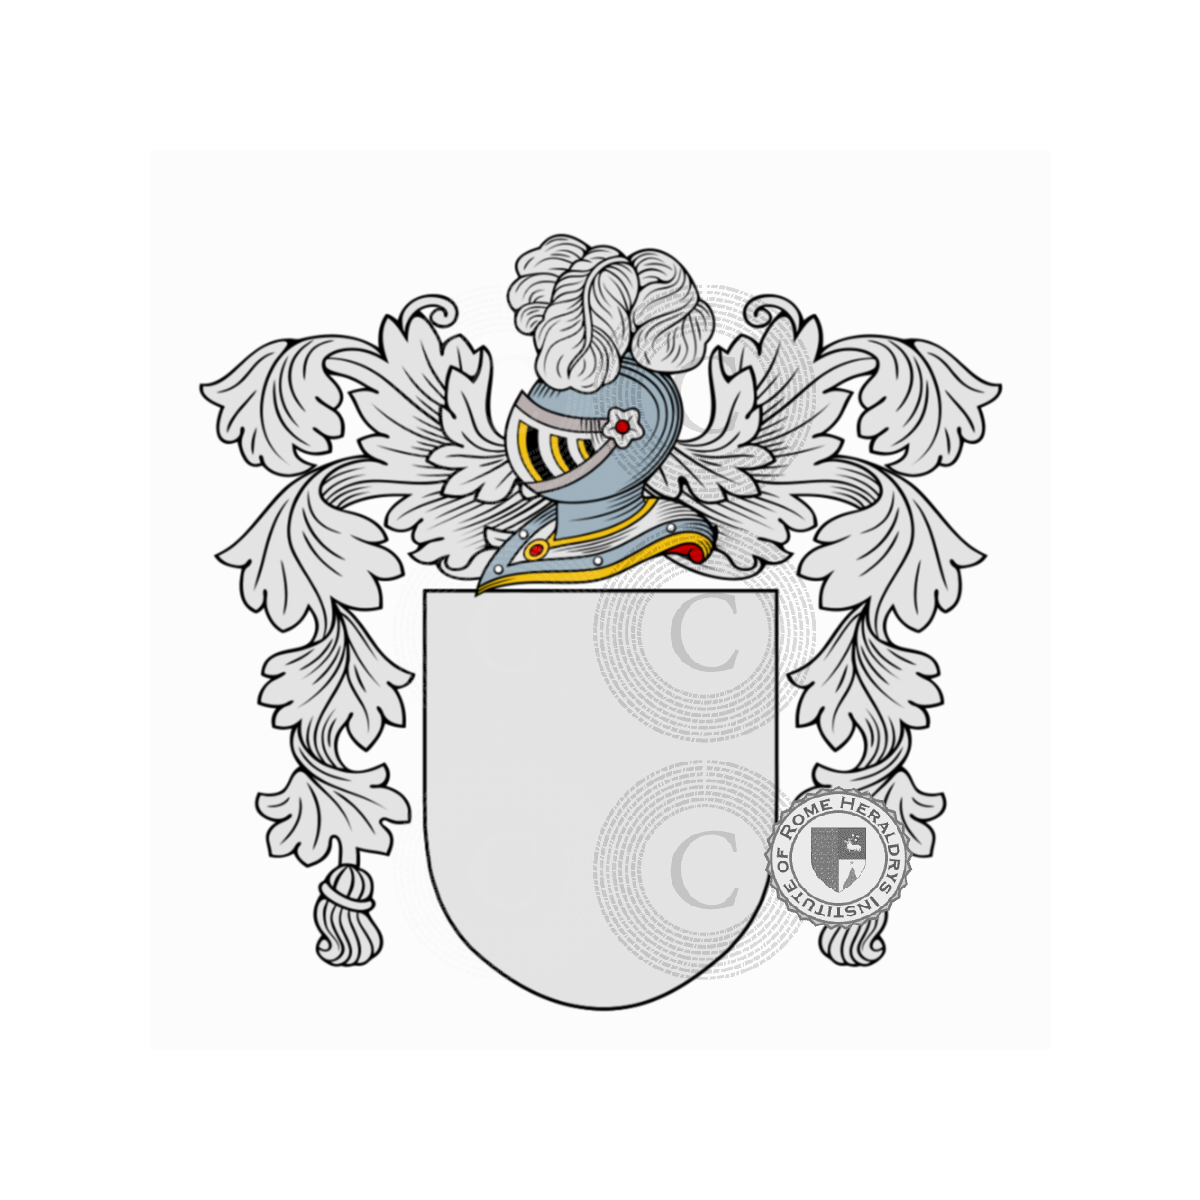 Wappen der FamilieScarlatti del Lion Rosso, Scarlatti del Lion Rosso,Scarlatti delle Stelle,Scarlatti Rondinelli